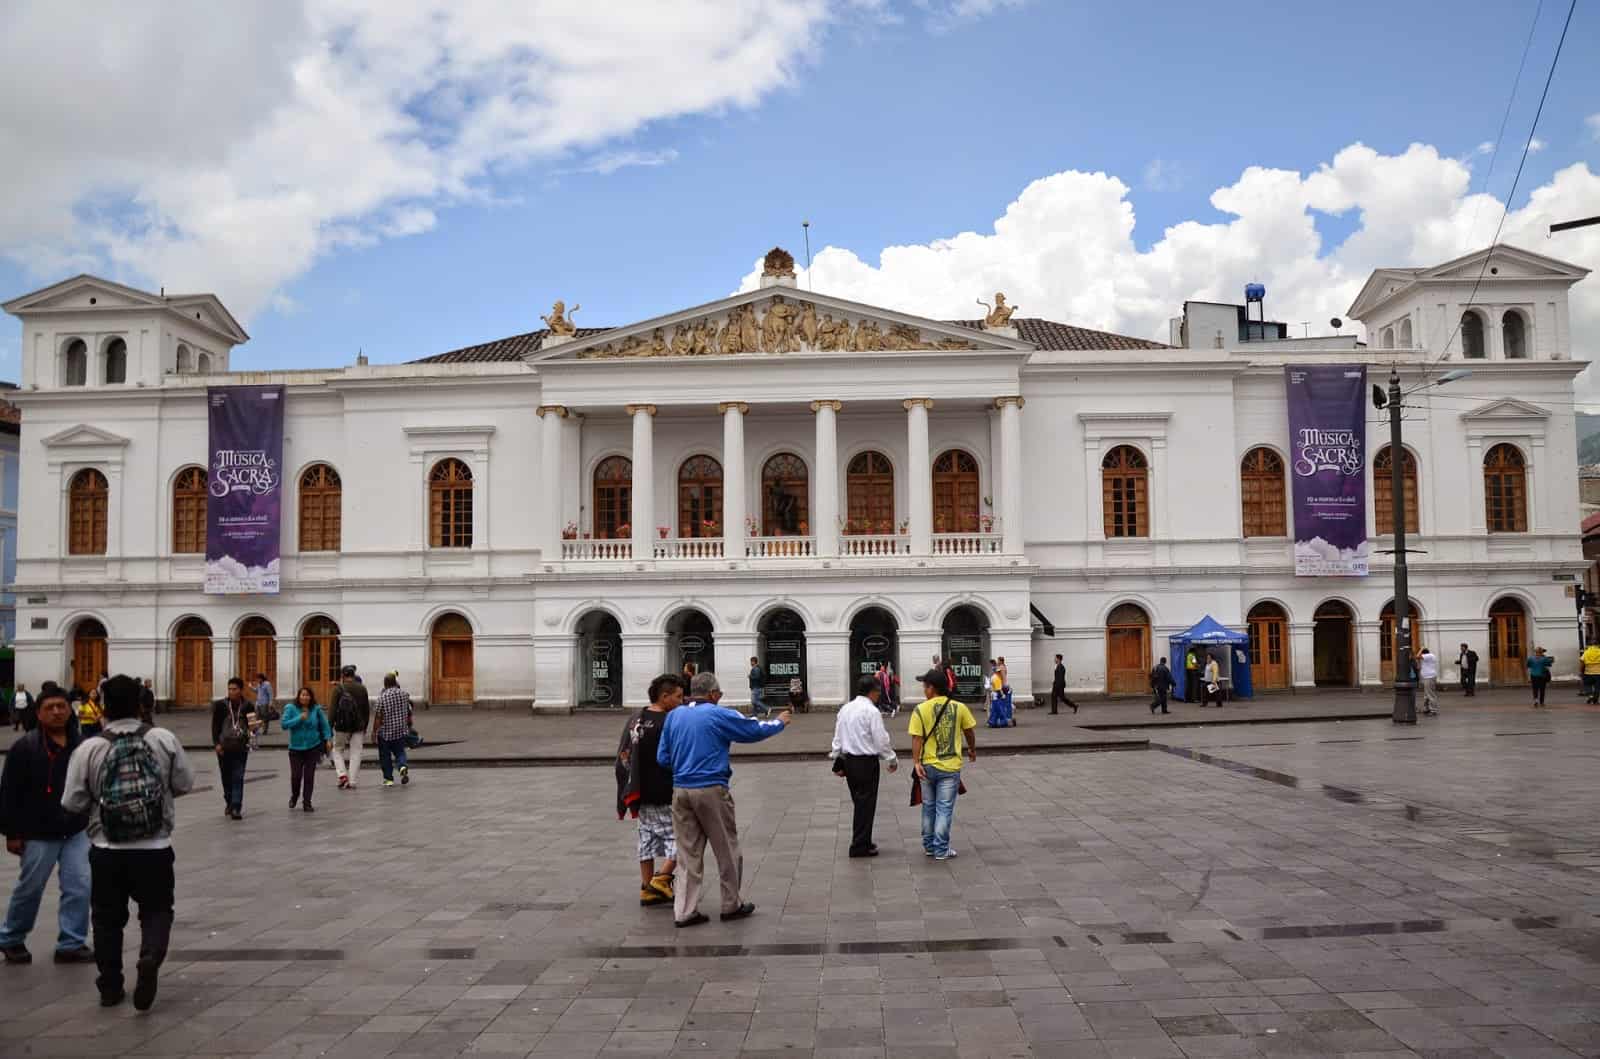 Teatro Sucre in Quito, Ecuador